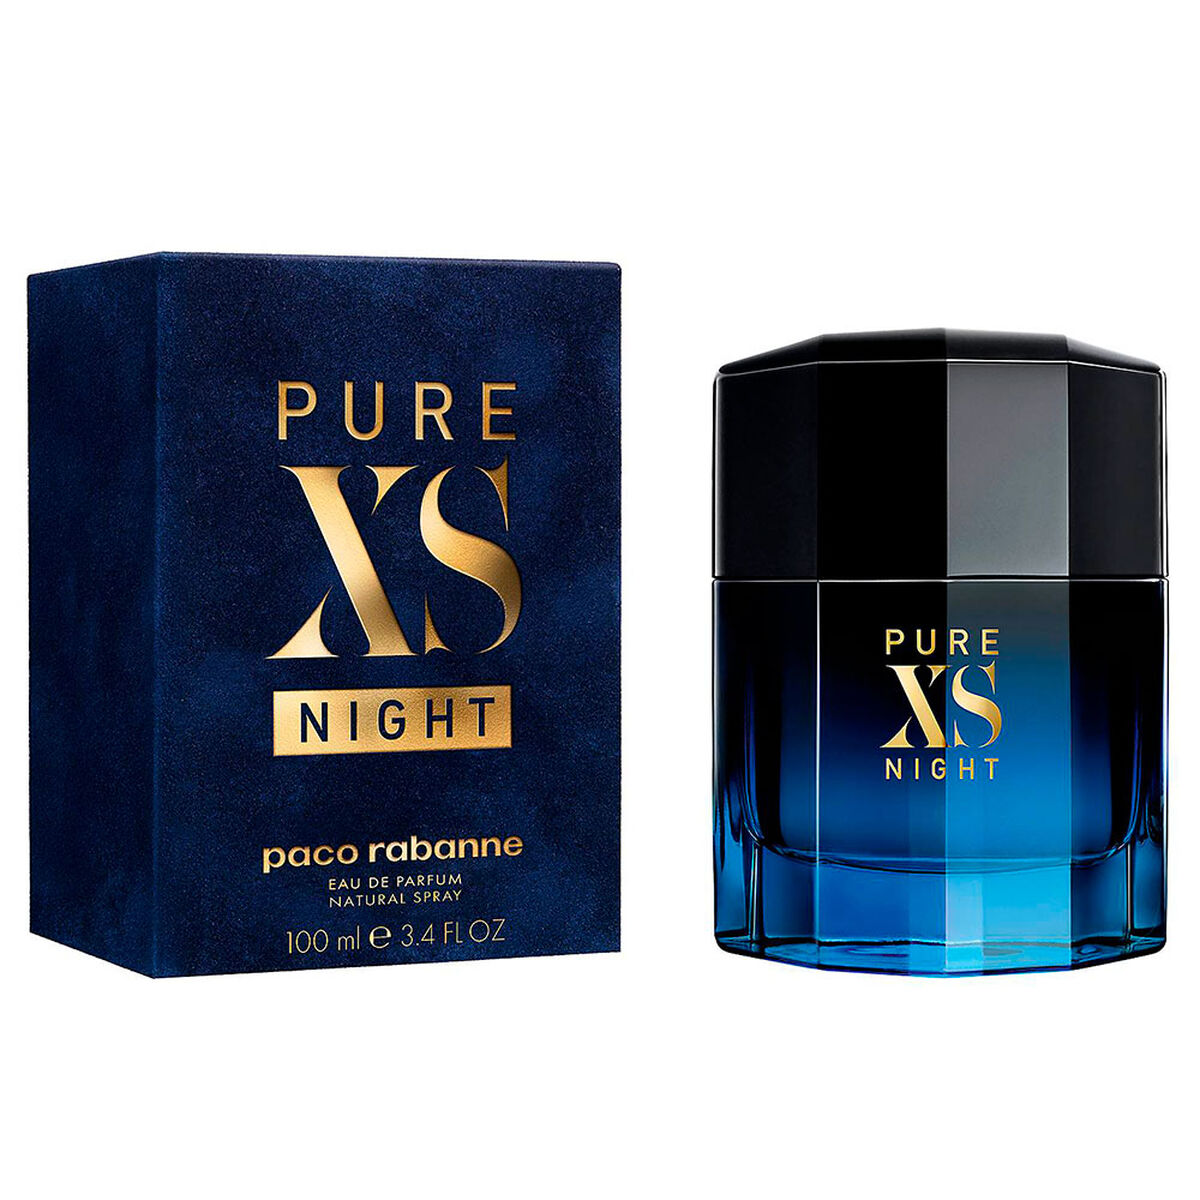 Perfume Paco Rabanne Pure XS Night EDP 100 ml